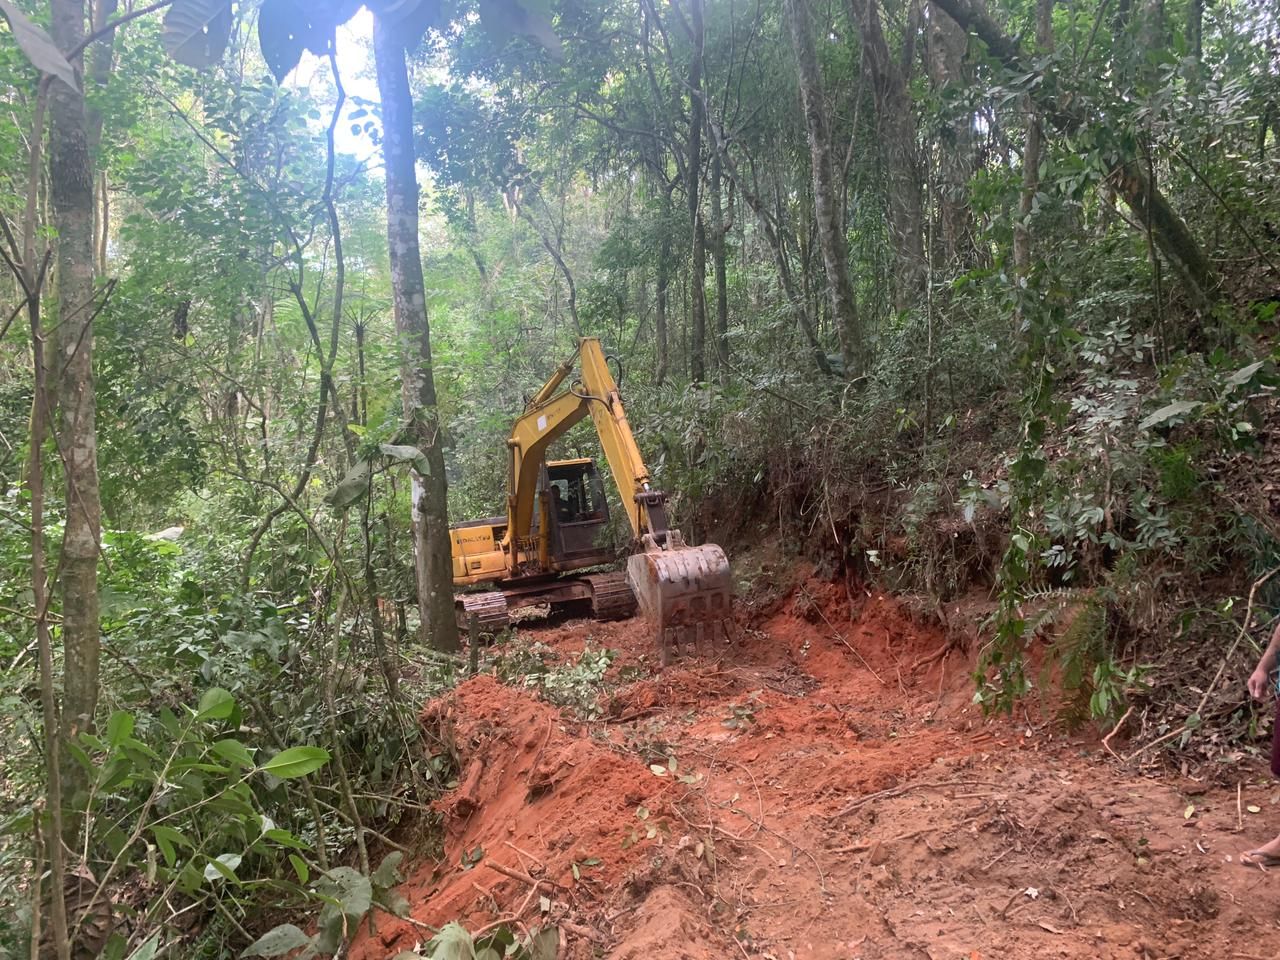 Desmatamento ilegal é descoberto em Itapevi